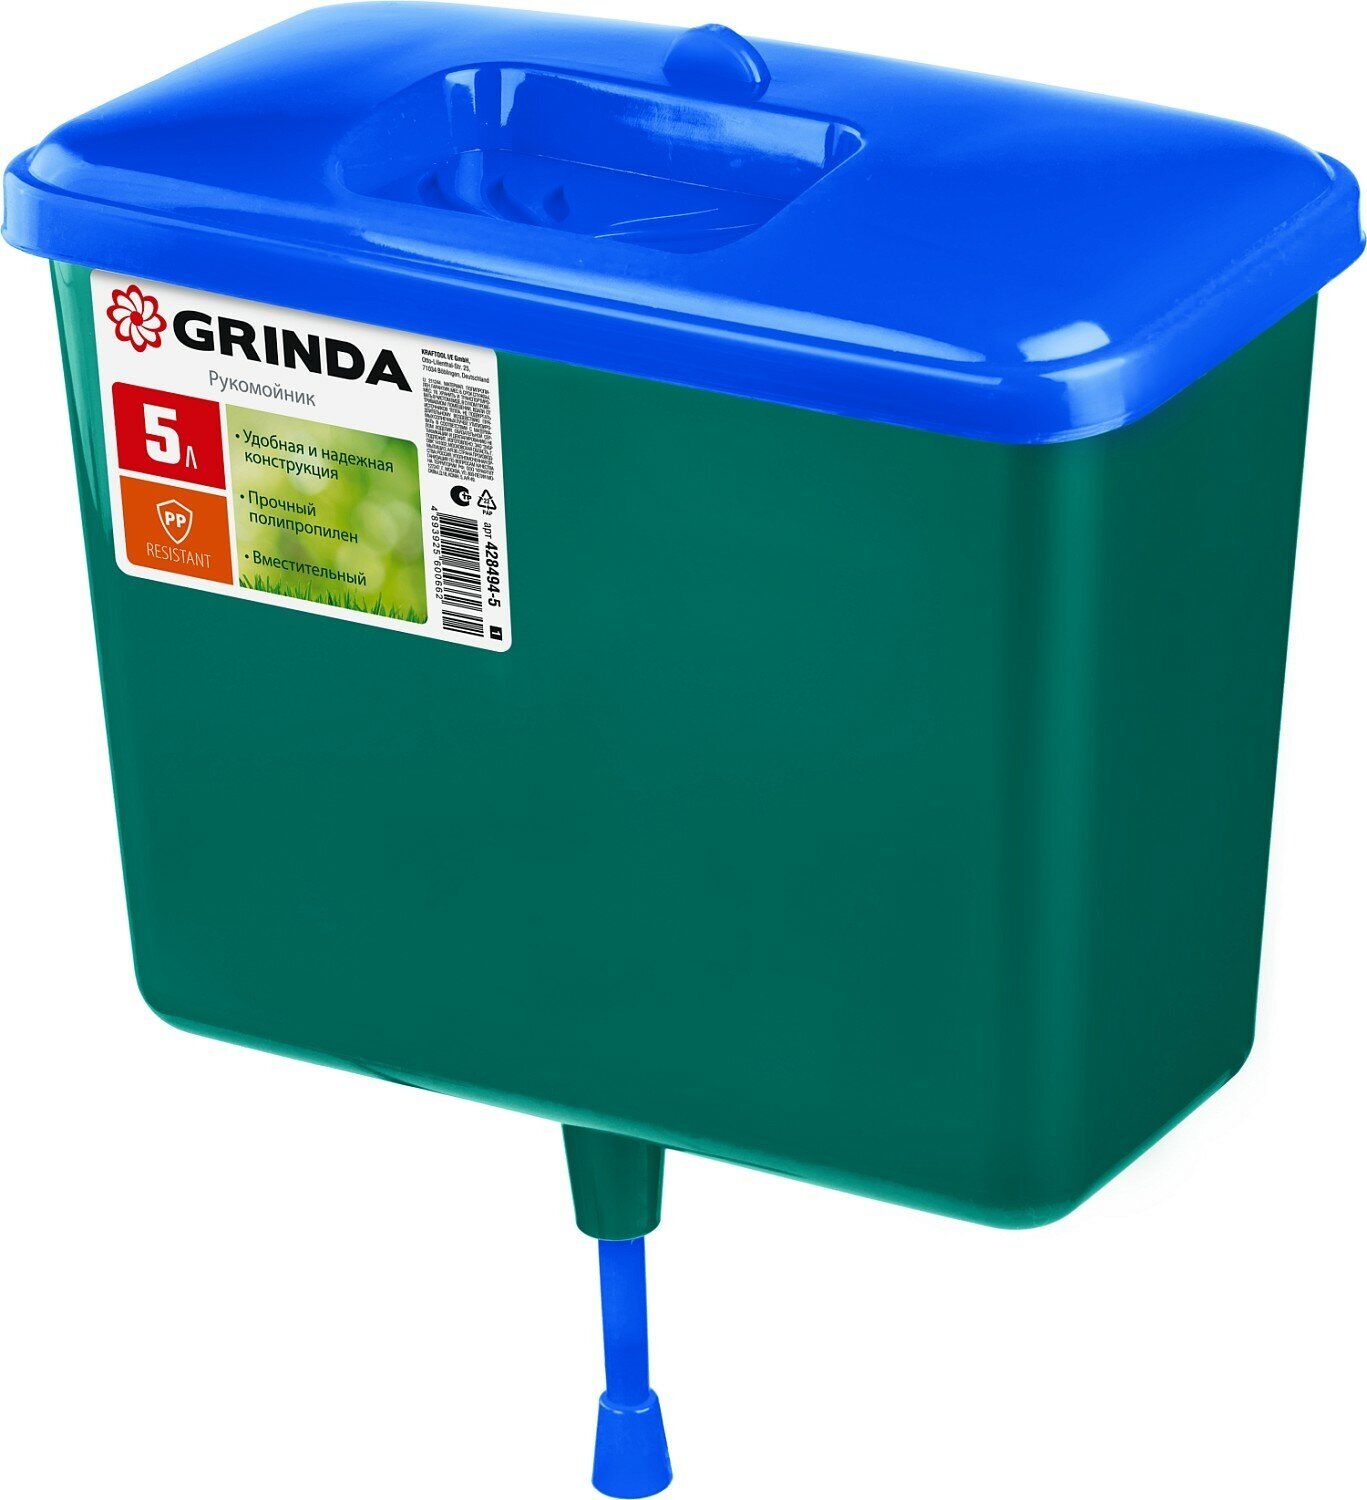 Рукомойник GRINDA 5л пластиковый